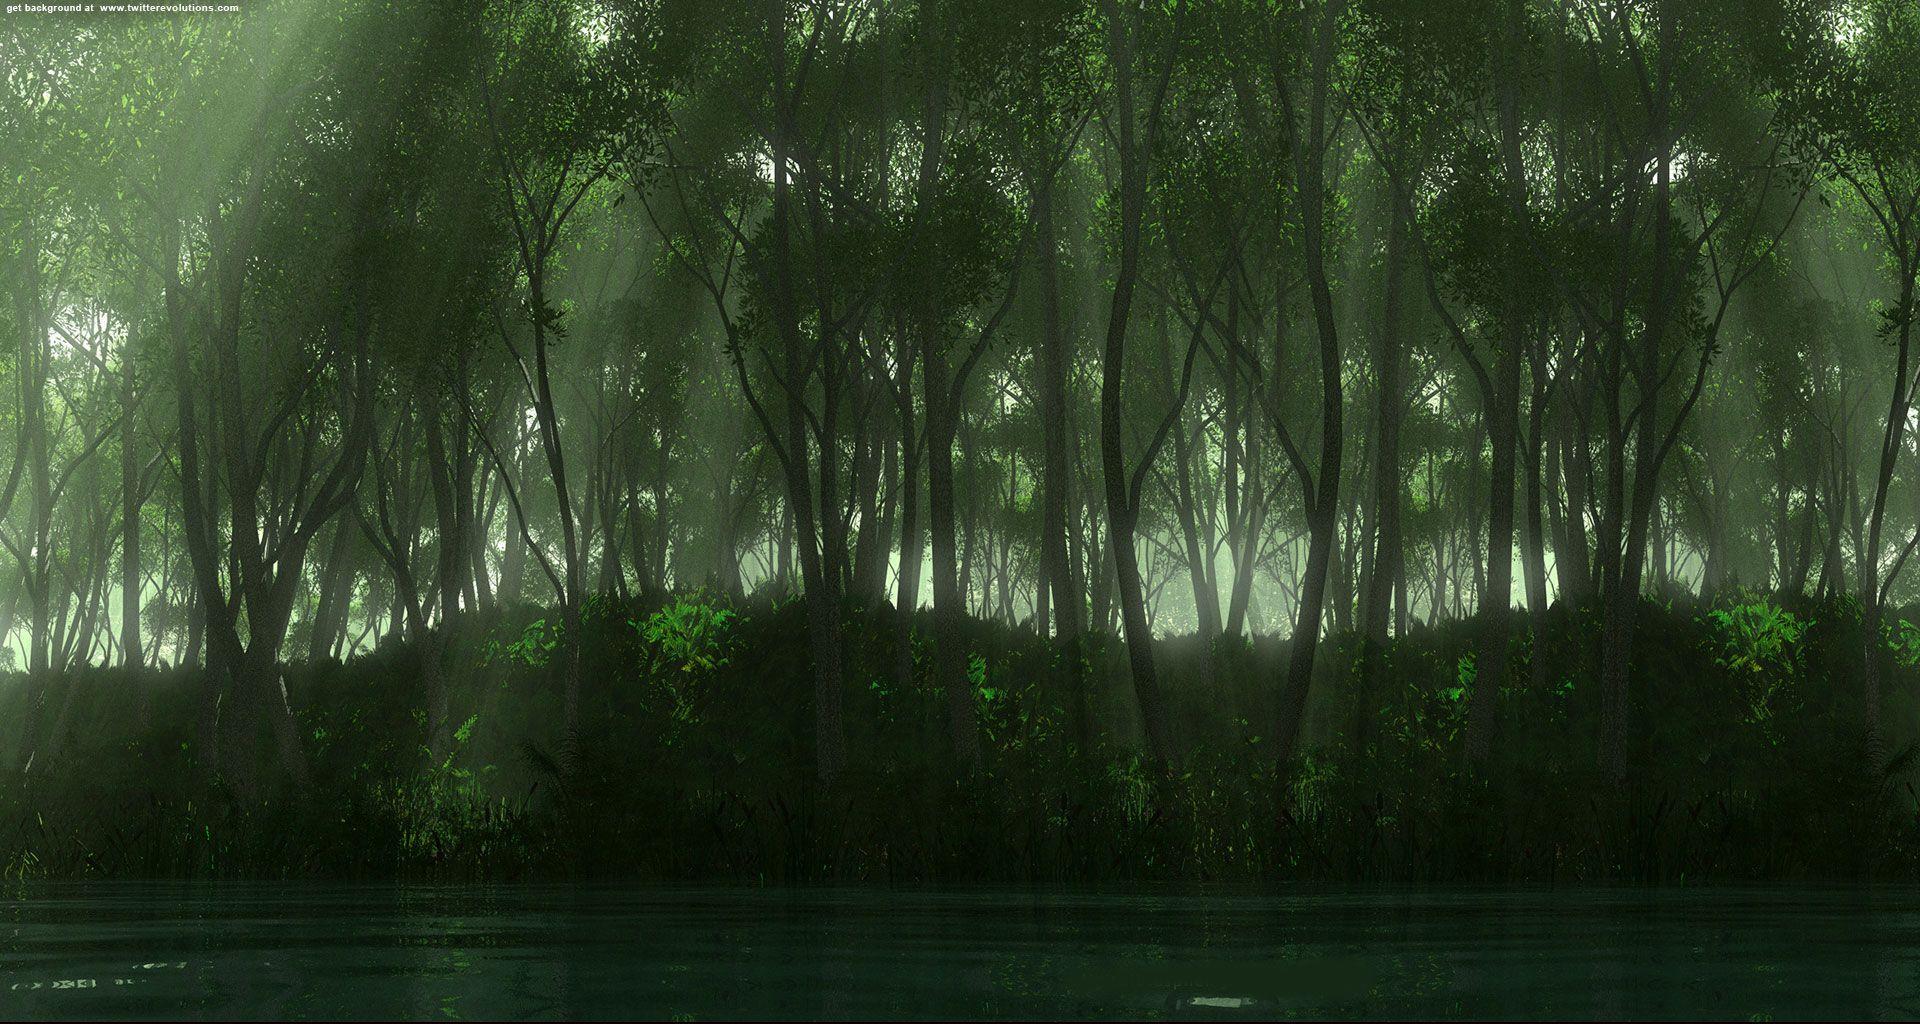 Dark green forest Twitter background. Twitter background